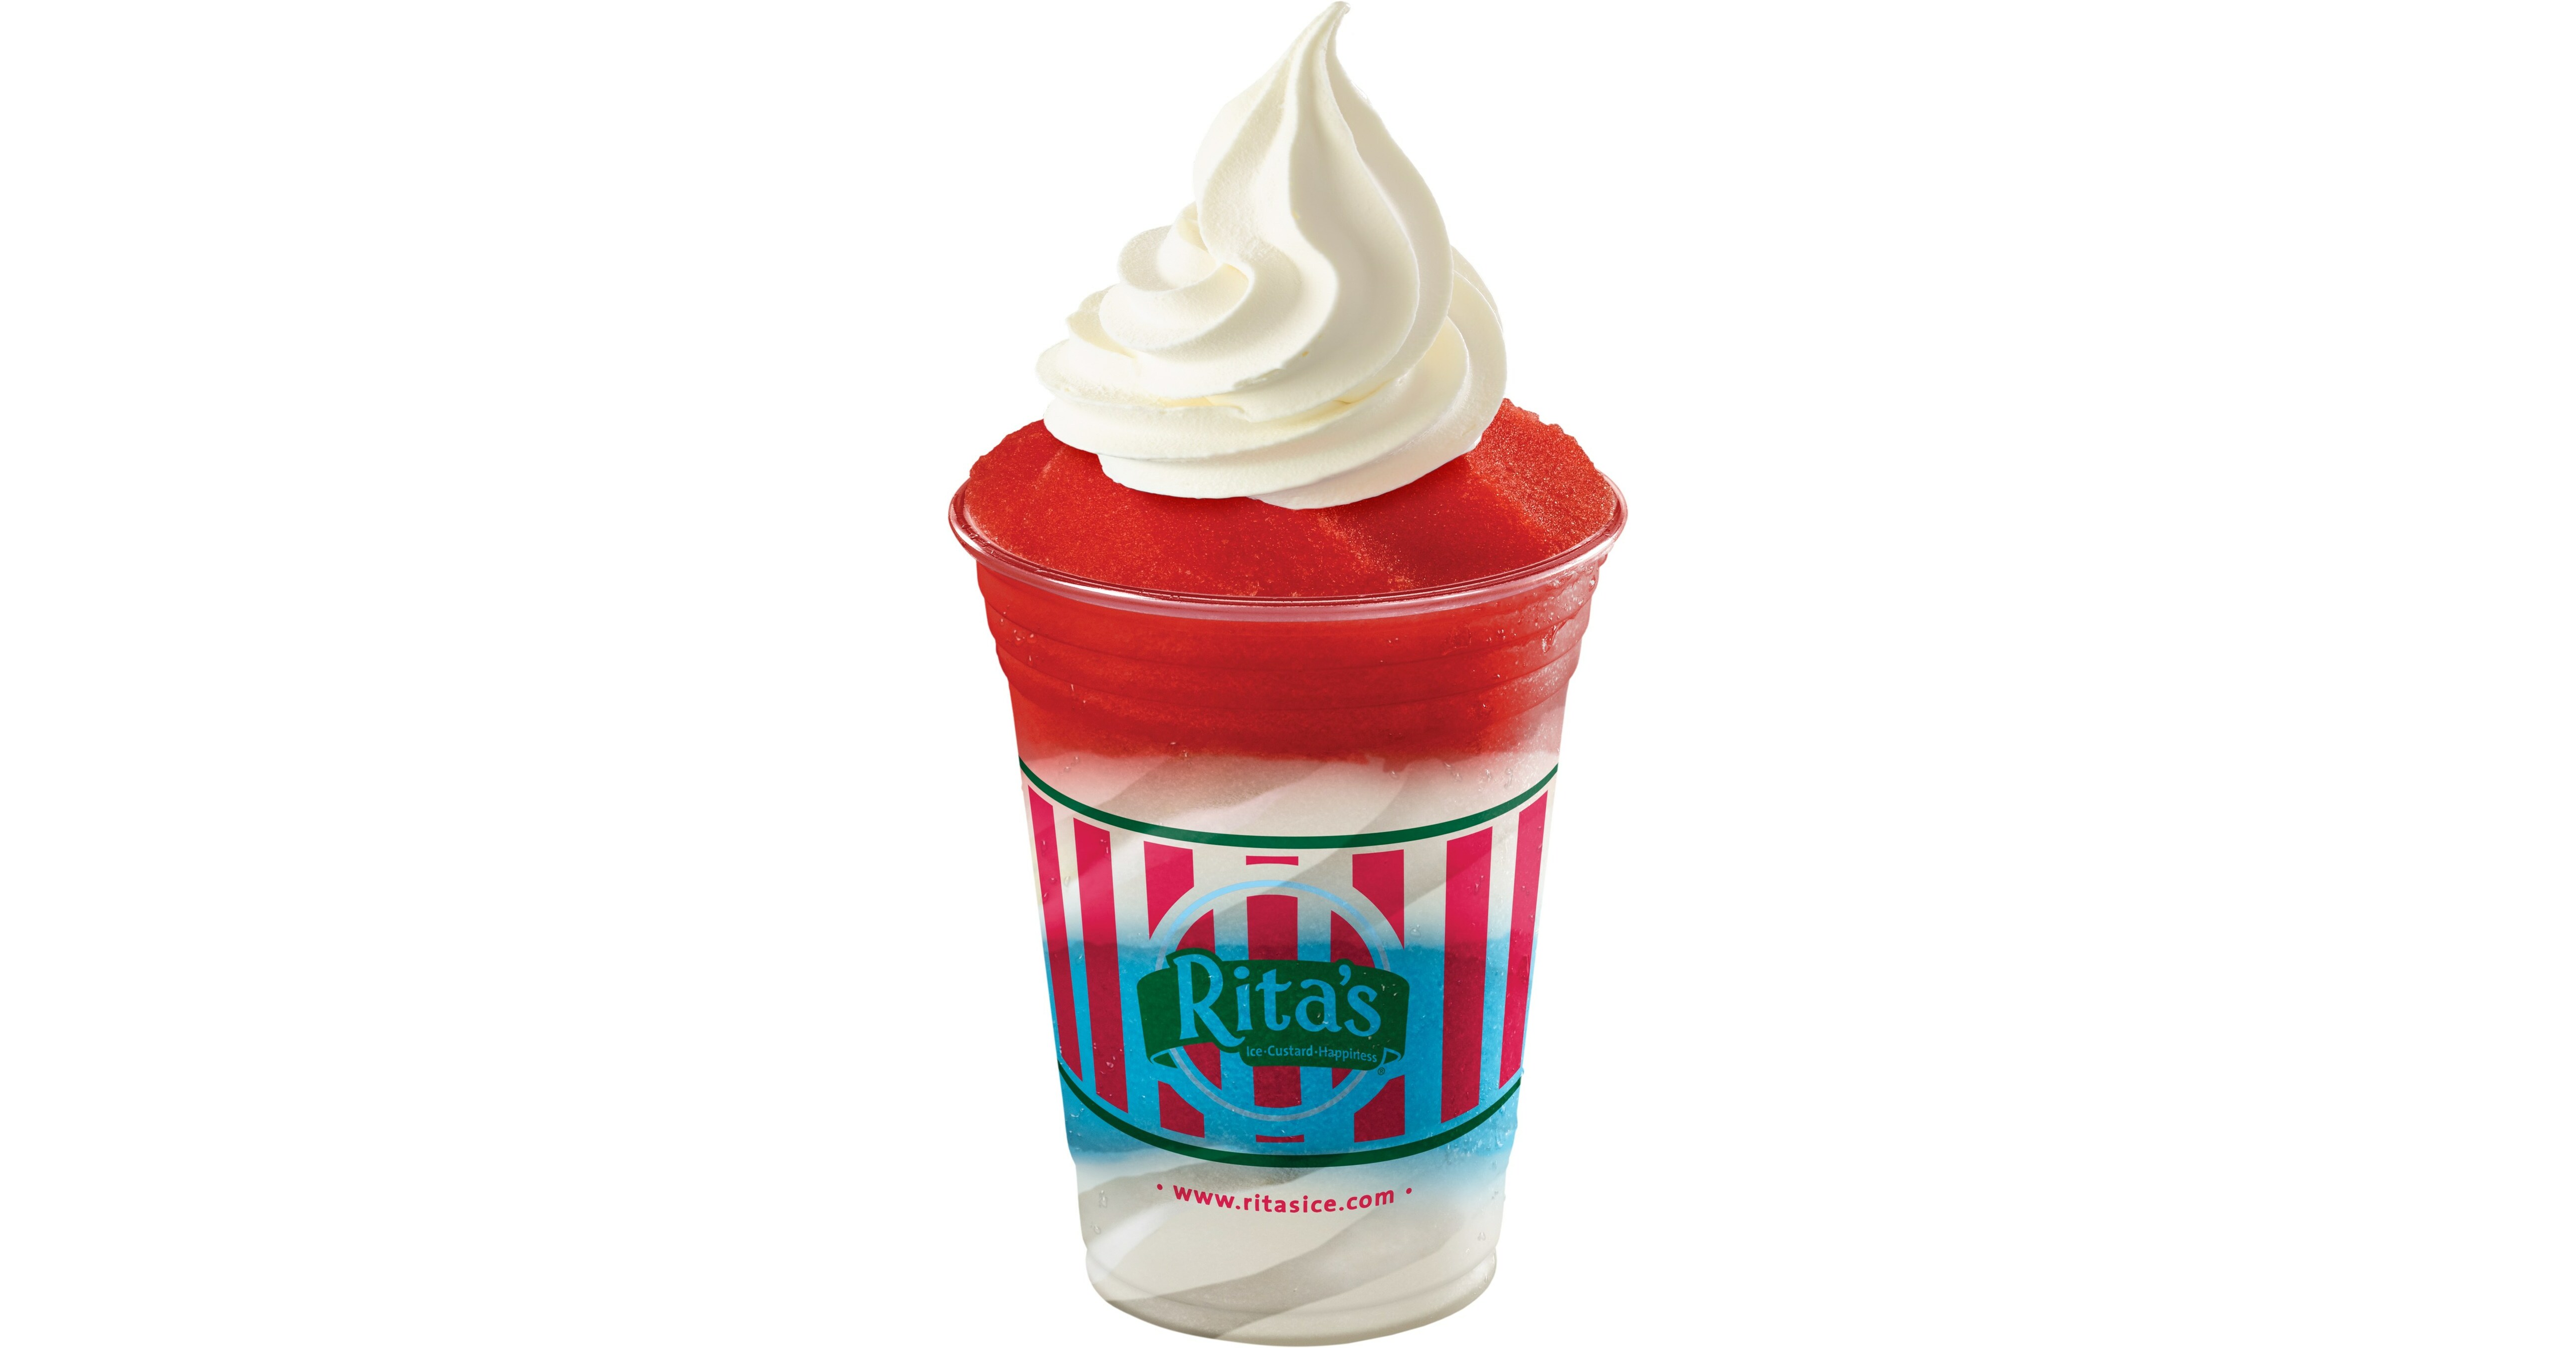 Rita's Ice Cream: Exploring a Popular Ice Cream Brand